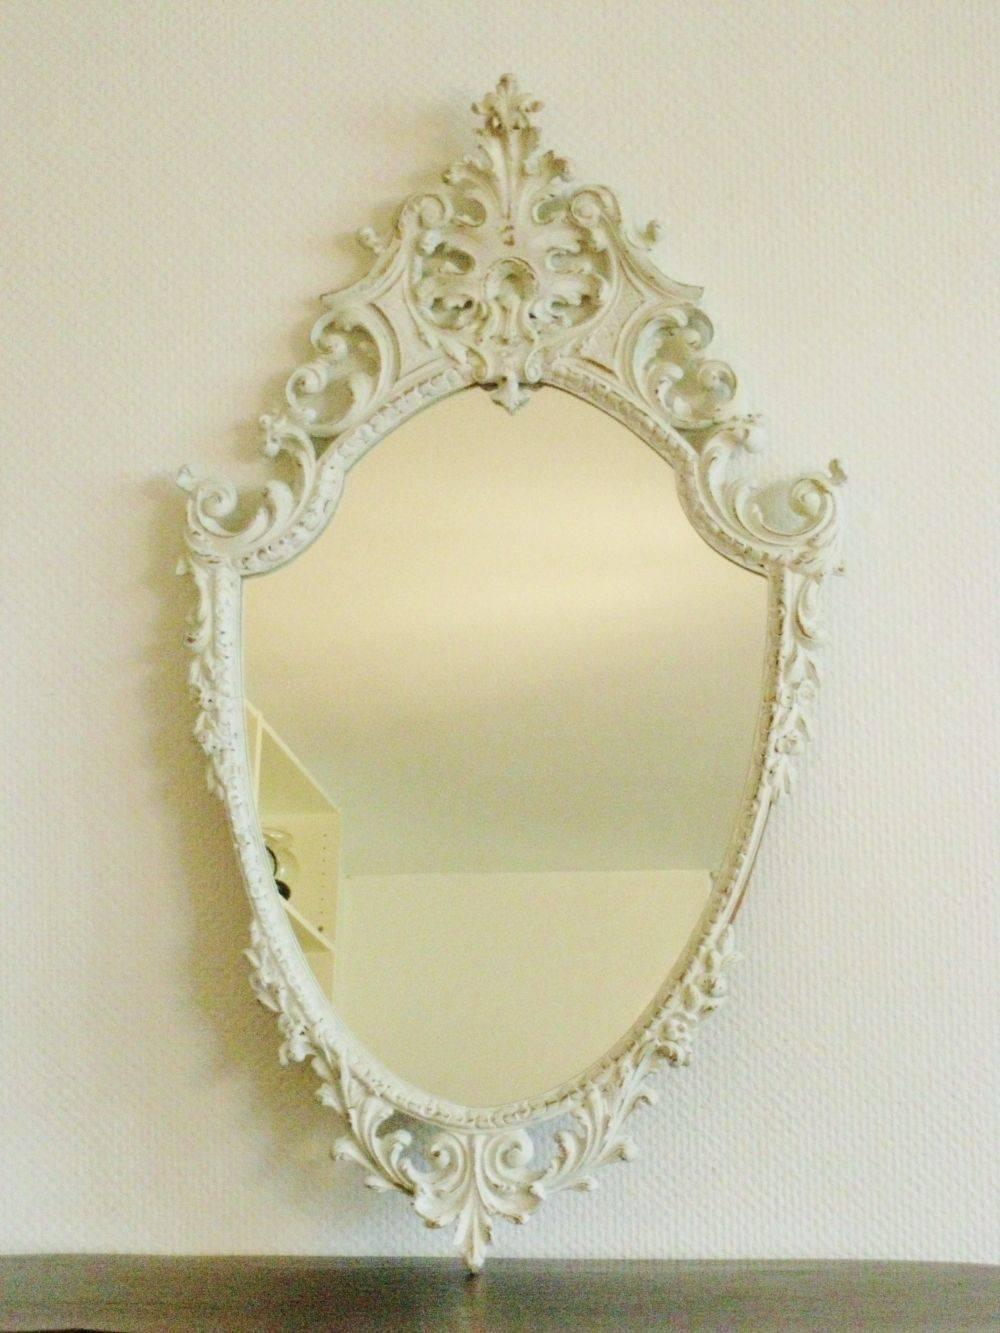 Ein wundervoller Spiegel im Rokoko-Stil aus vergoldetem und weiß geschnitztem Holz mit gewölbter Oberseite, der mit feinen künstlerischen Details gefertigt wurde und jedem Raum Schönheit und Eleganz verleiht. 
Maße: Höhe 38 Zoll (96,5 cm)
Breite